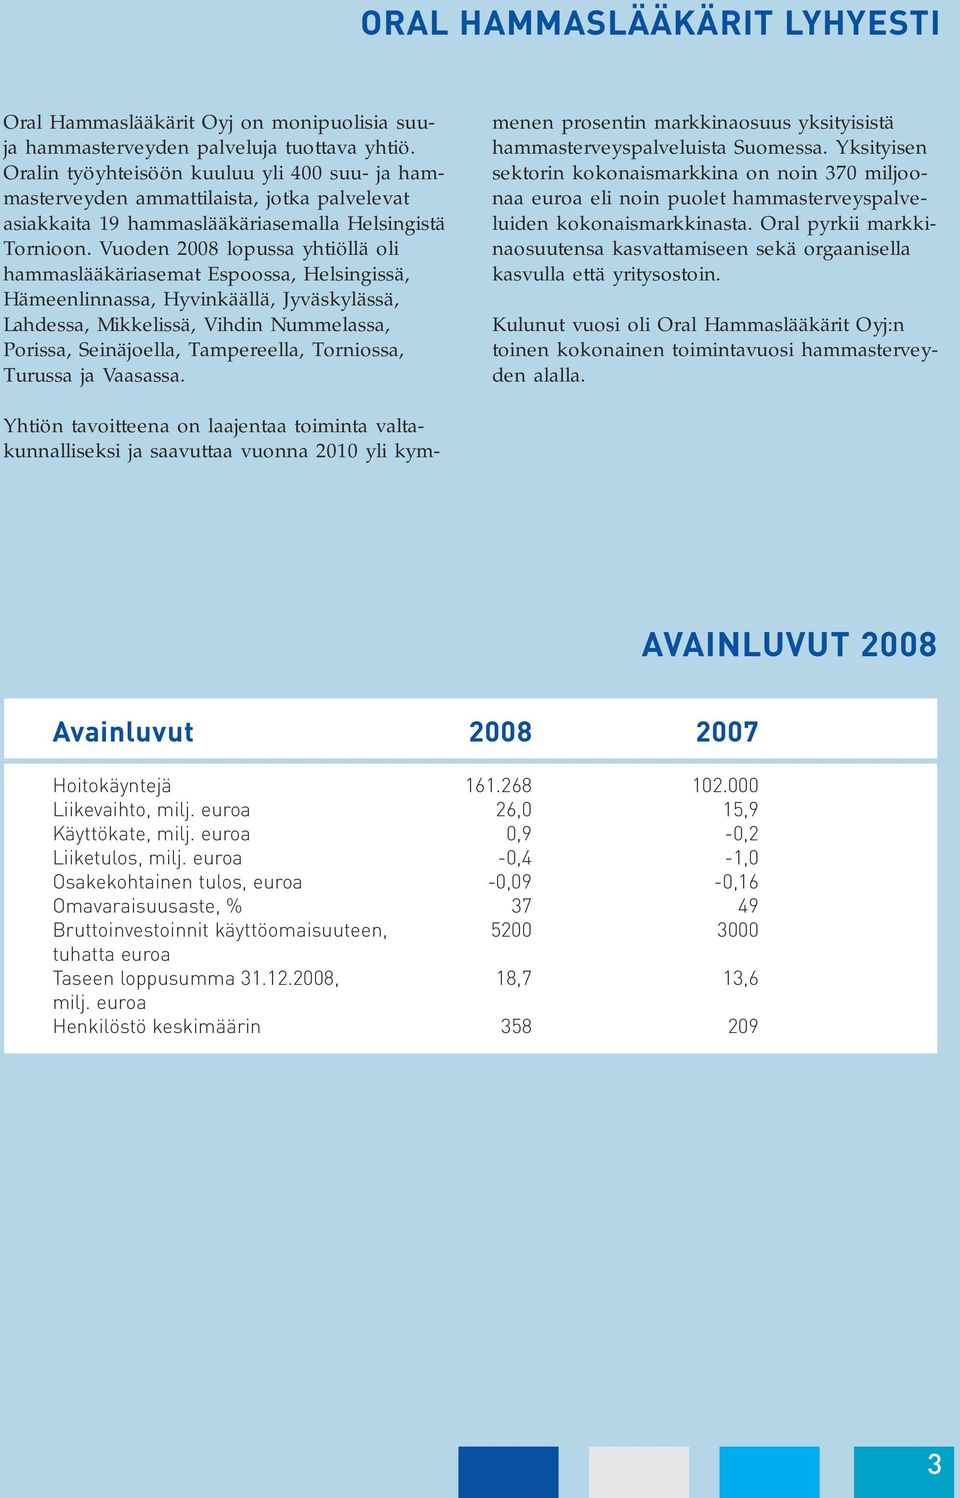 Vuoden 2008 lopussa yhtiöllä oli hammaslääkäriasemat Espoossa, Helsingissä, Hämeenlinnassa, Hyvinkäällä, Jyväskylässä, Lahdessa, Mikkelissä, Vihdin Nummelassa, Porissa, Seinäjoella, Tampereella,